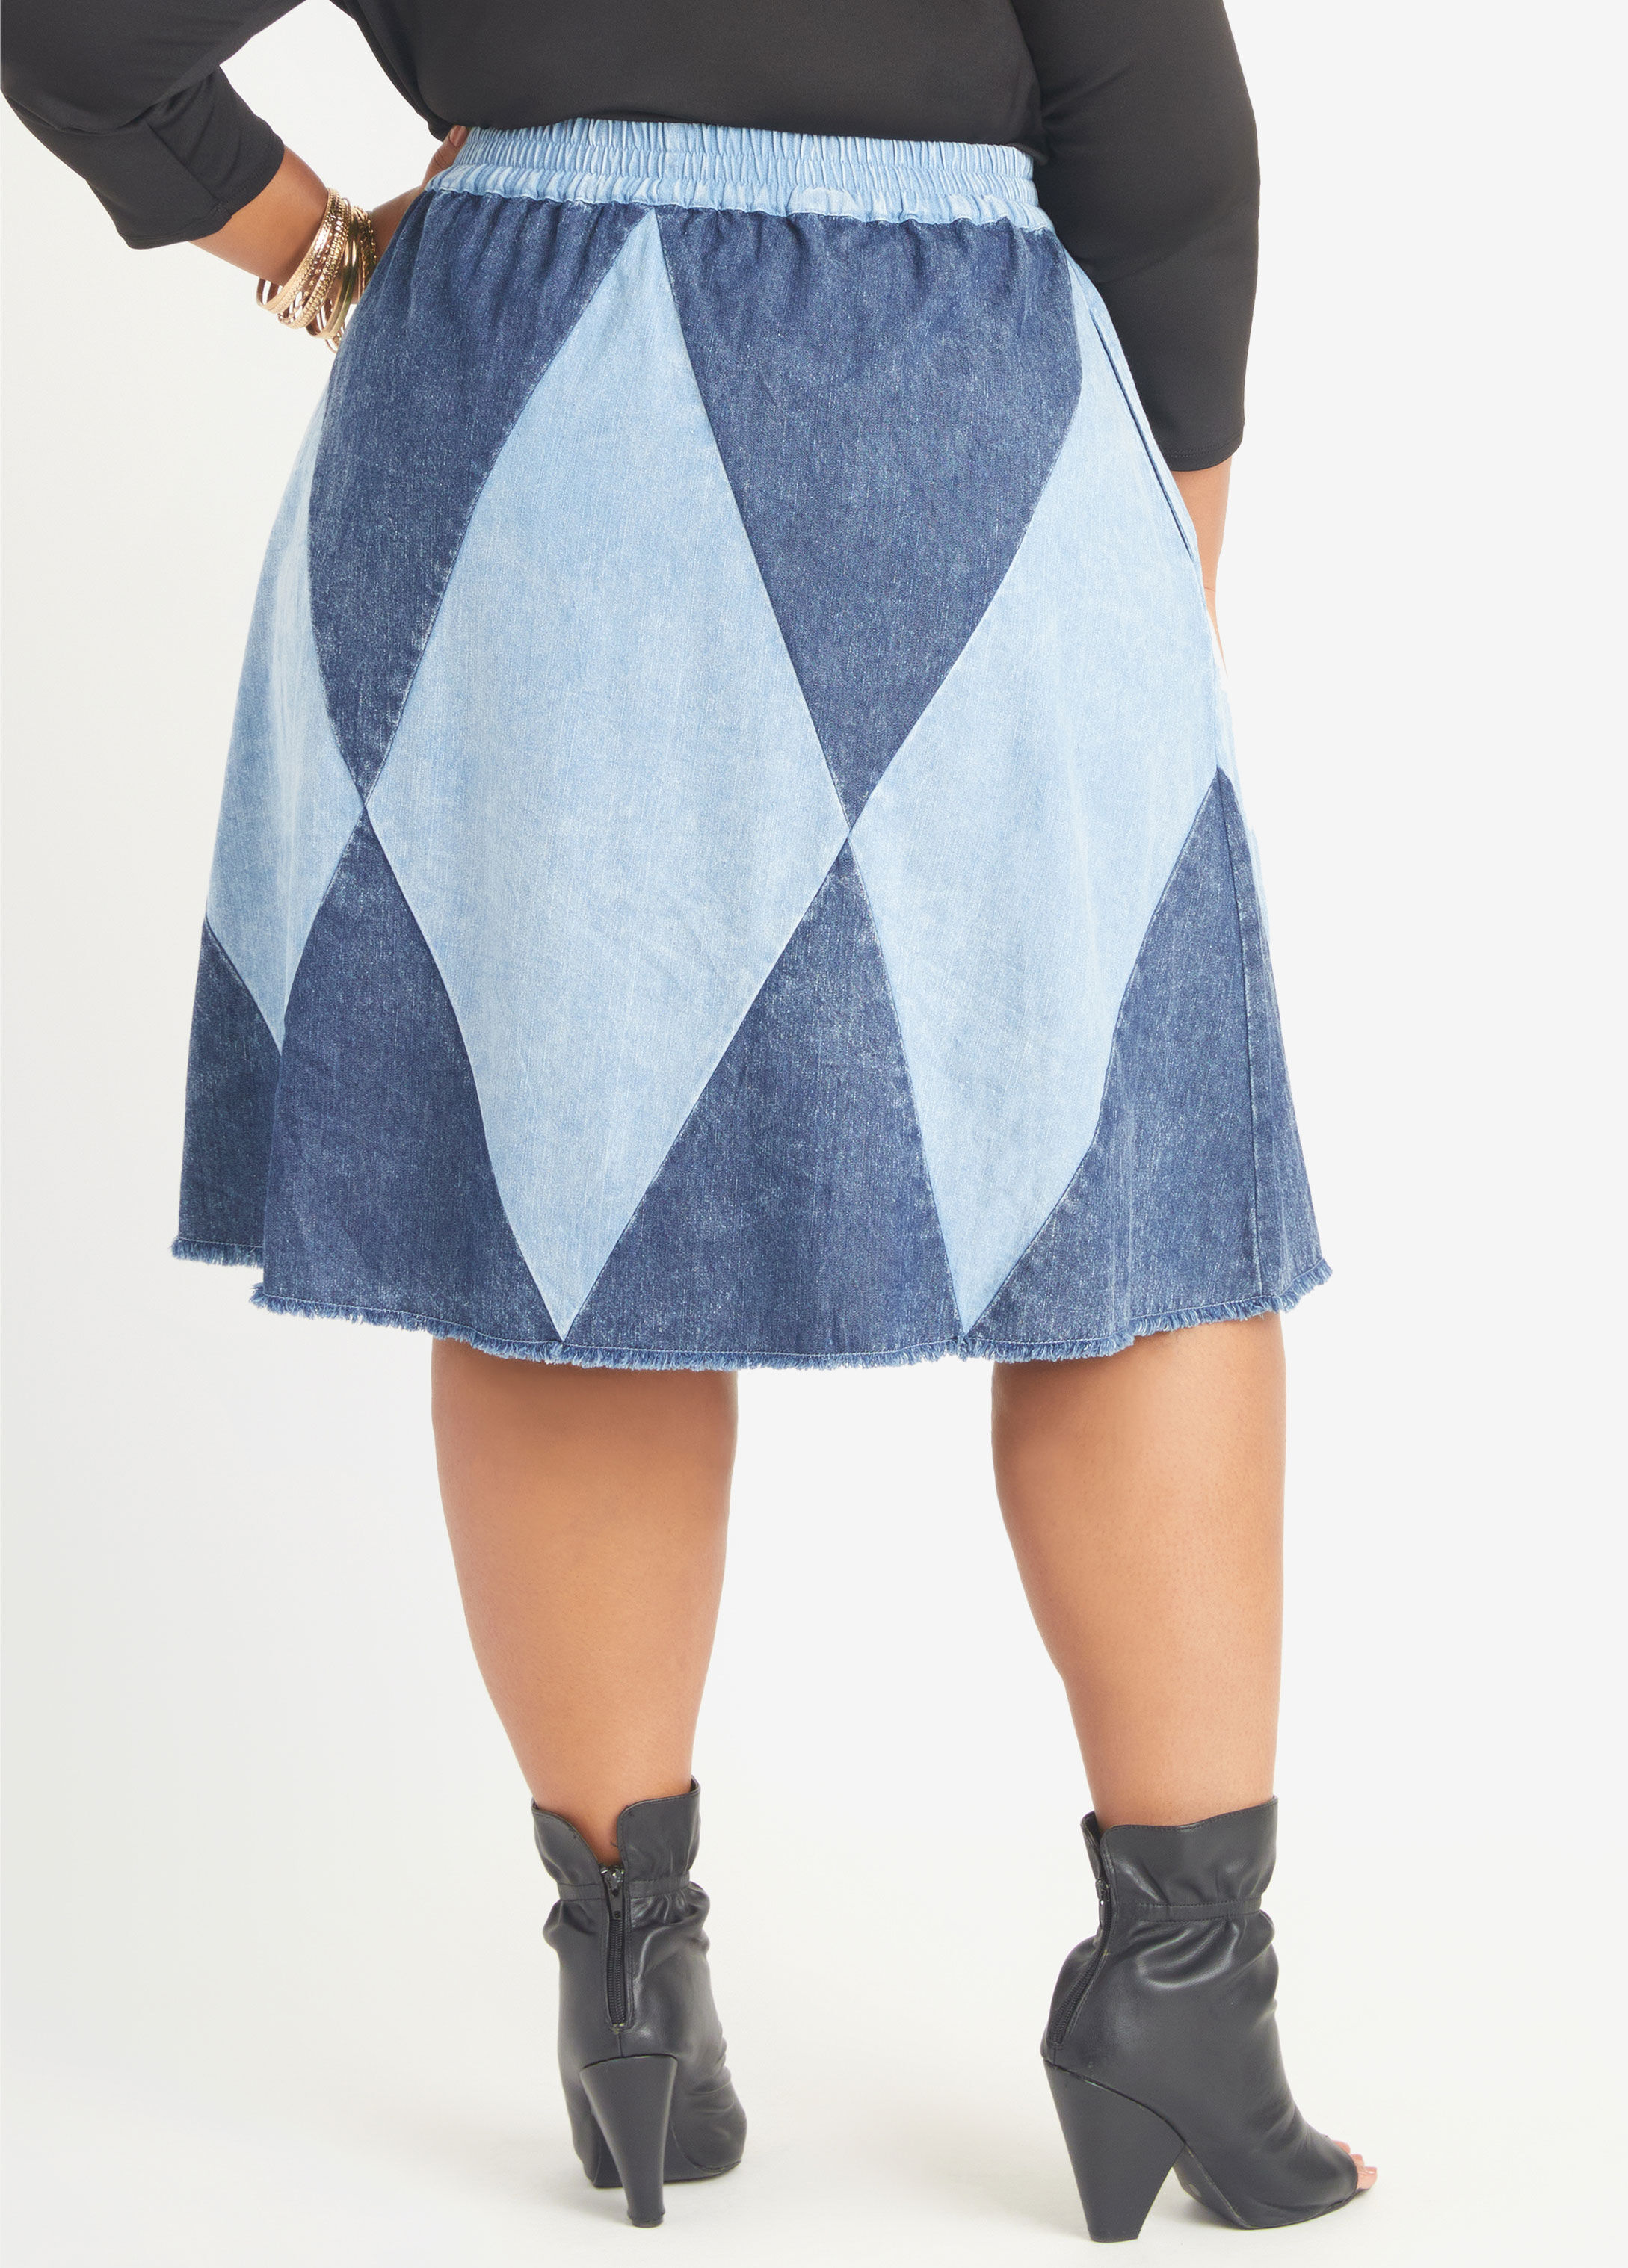 Plus Size Denim Skirts, Sizes 10 - 36 | Ashley Stewart